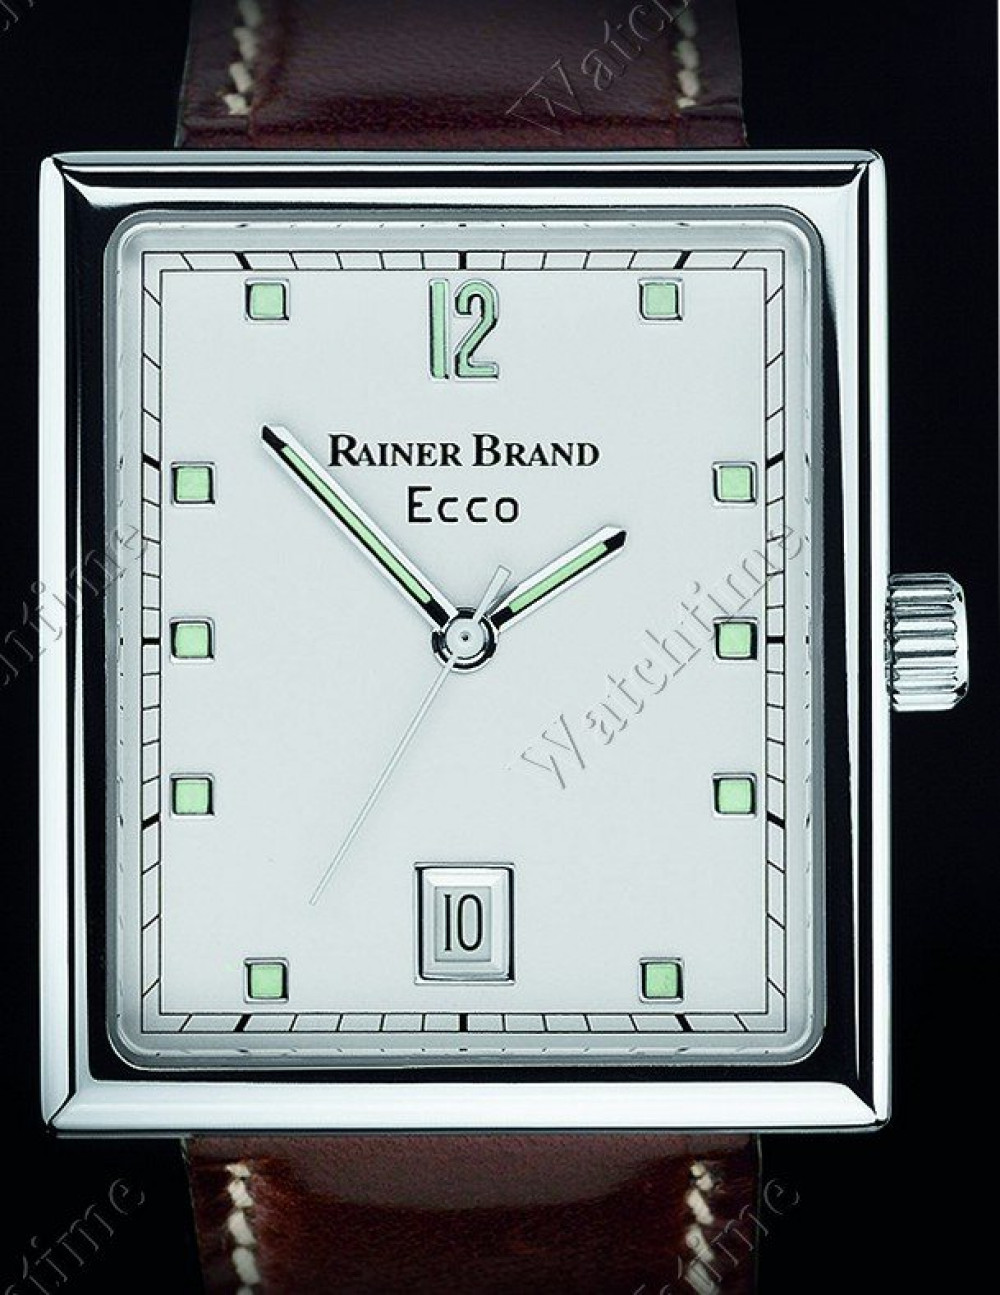 Zegarek firmy Rainer Brand, model Ecco